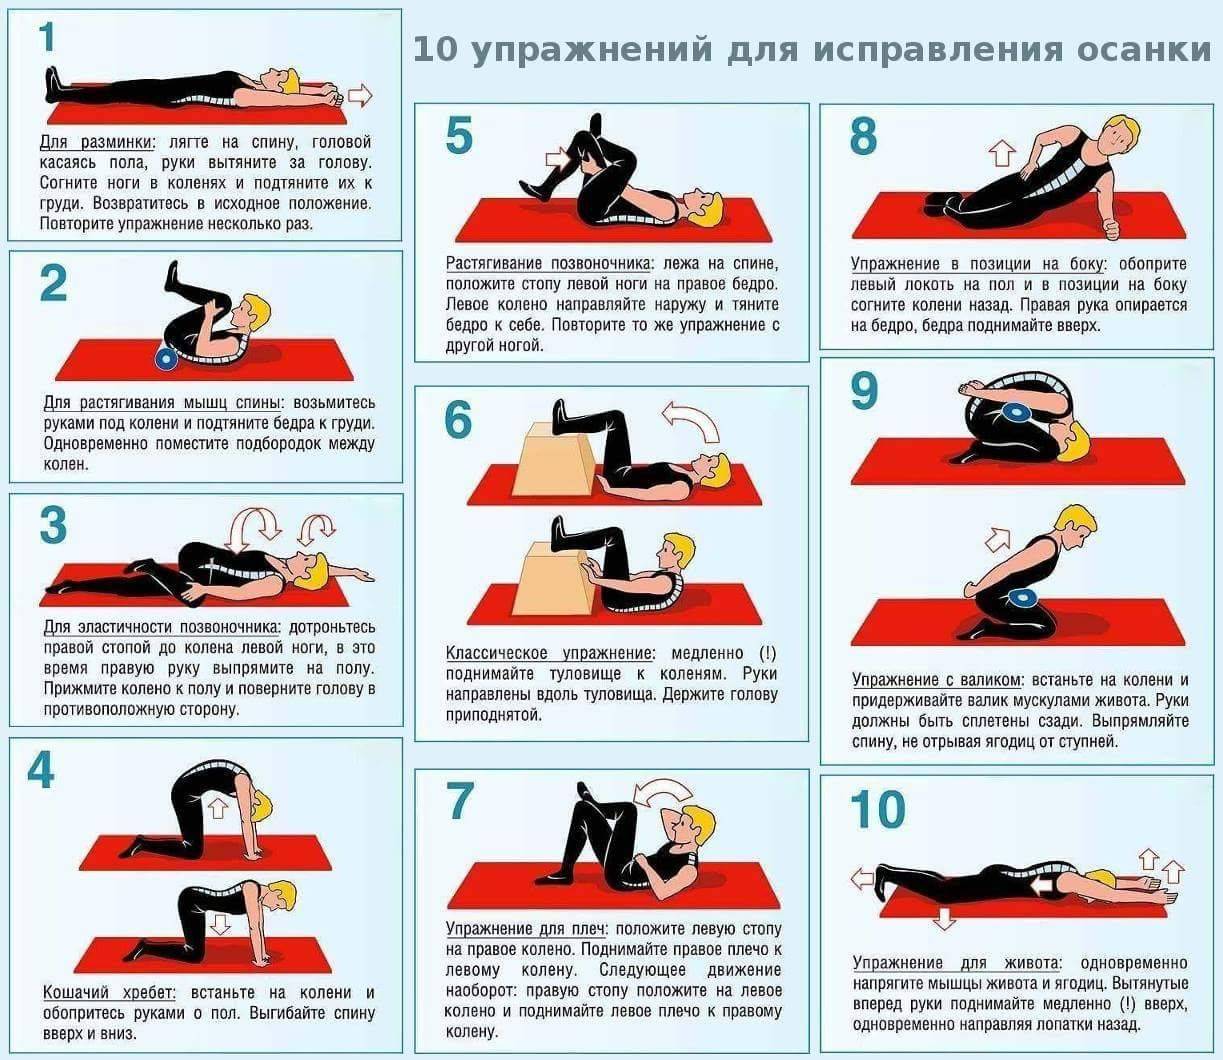 Как сделать красивую спину и королевскую осанку: 5 лучших упражнений - 7дней.ру